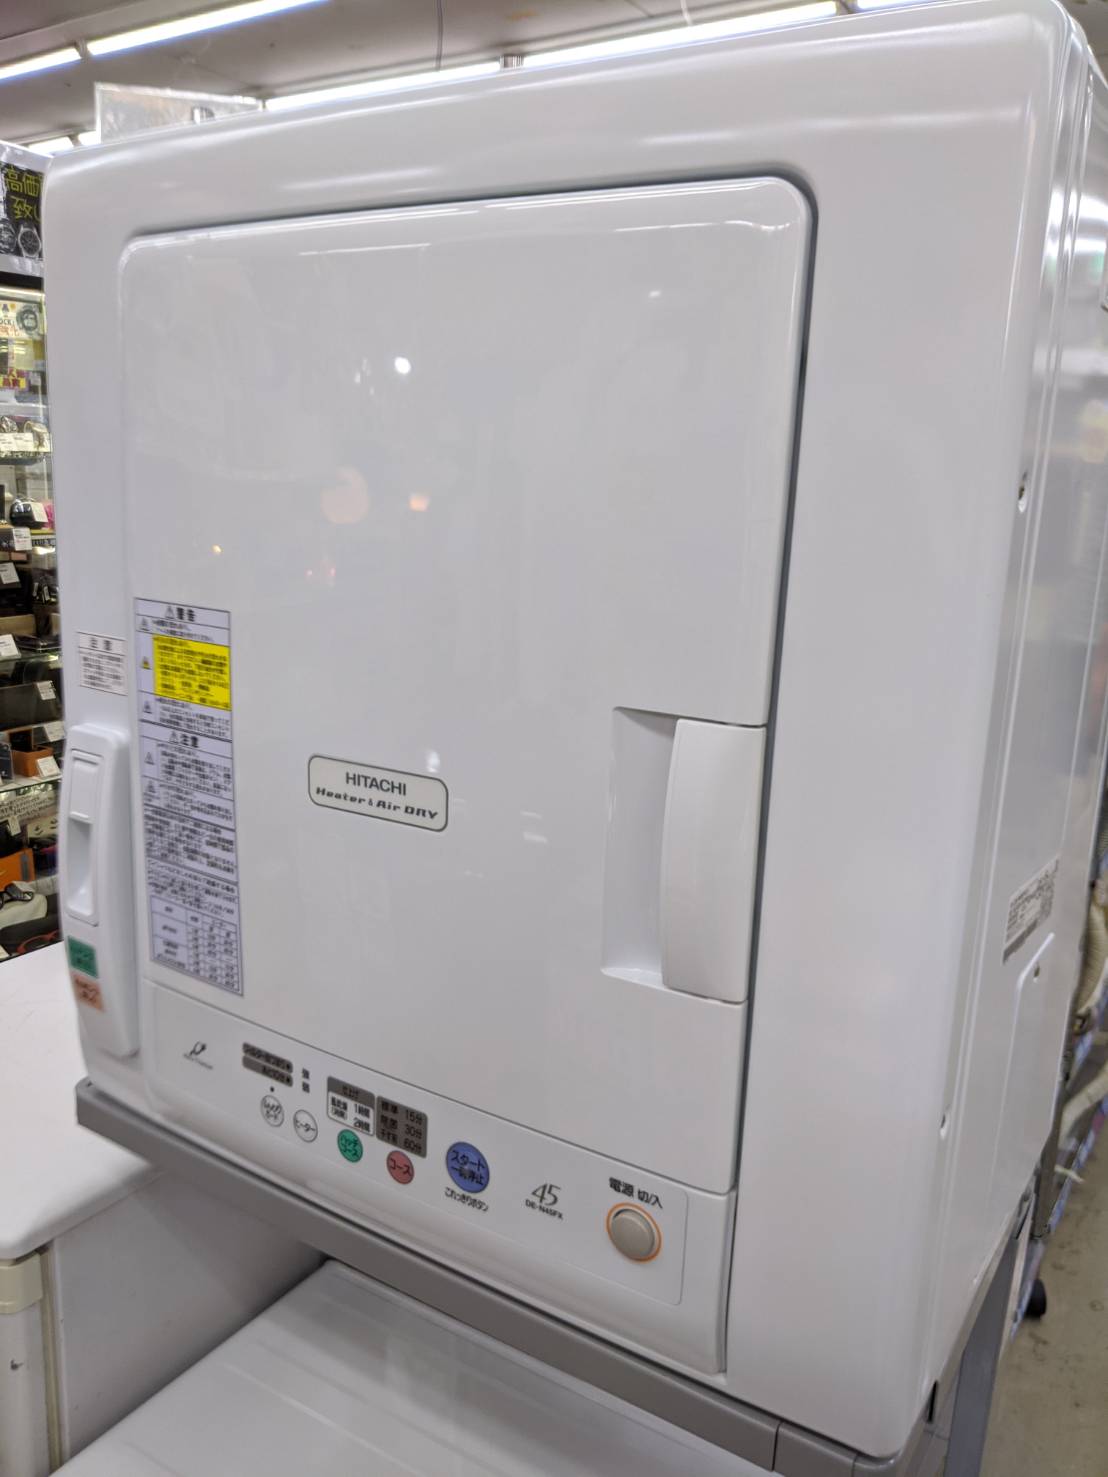 【HITACHI 日立 4.5kg乾燥機 DE-N45FX】を買取致しました！ - リサイクルマートは現在冷蔵庫の買取、家具の買取強化中です！お気軽にお問い合わせください。